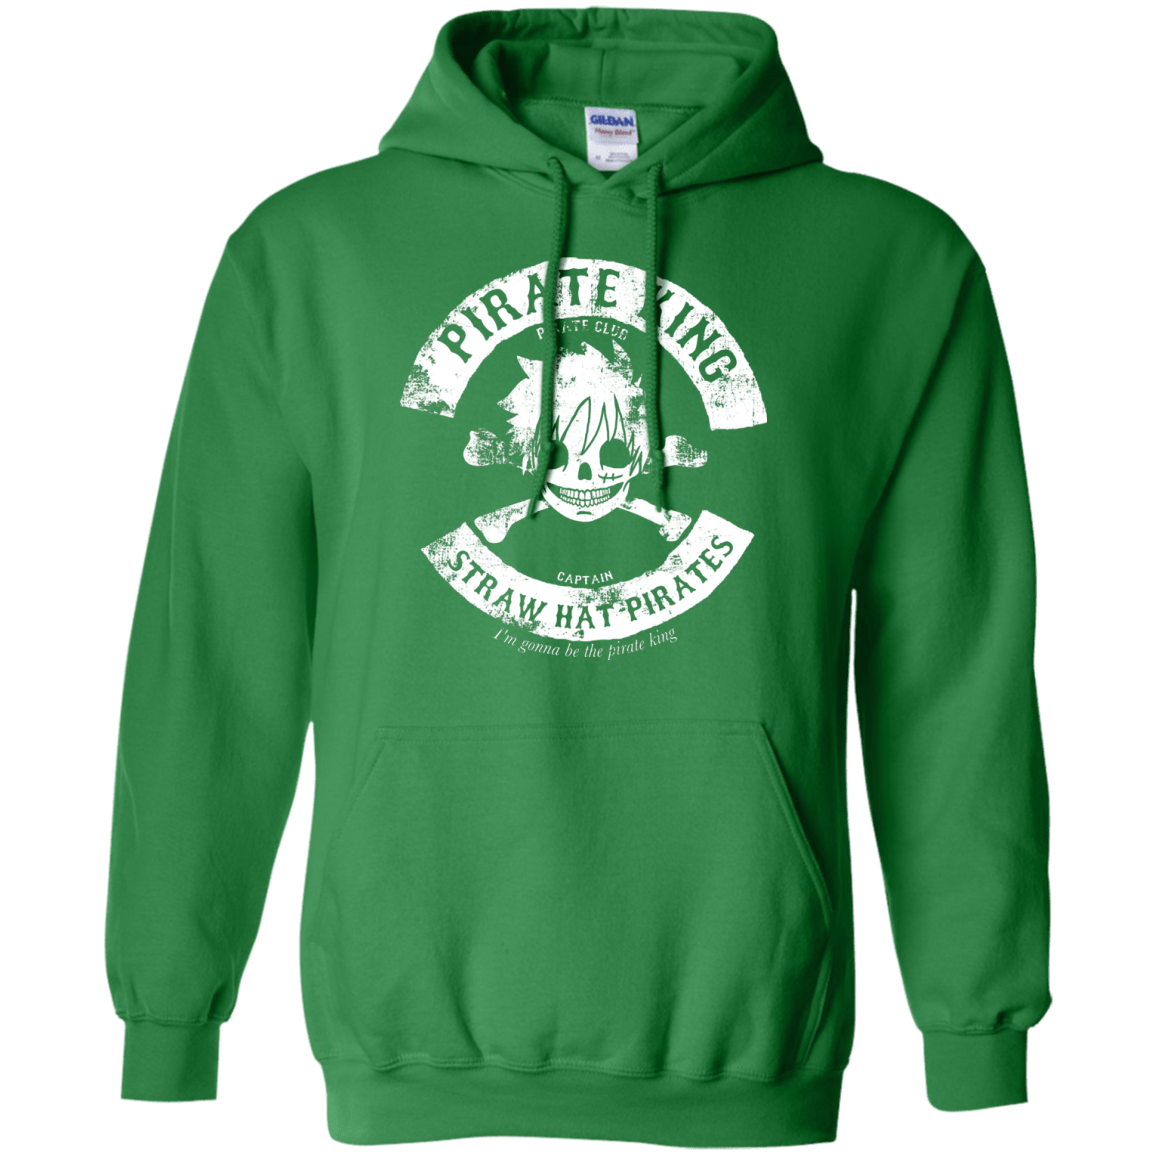 Sweatshirts Irish Green / S Pirate King Skull Pullover Hoodie